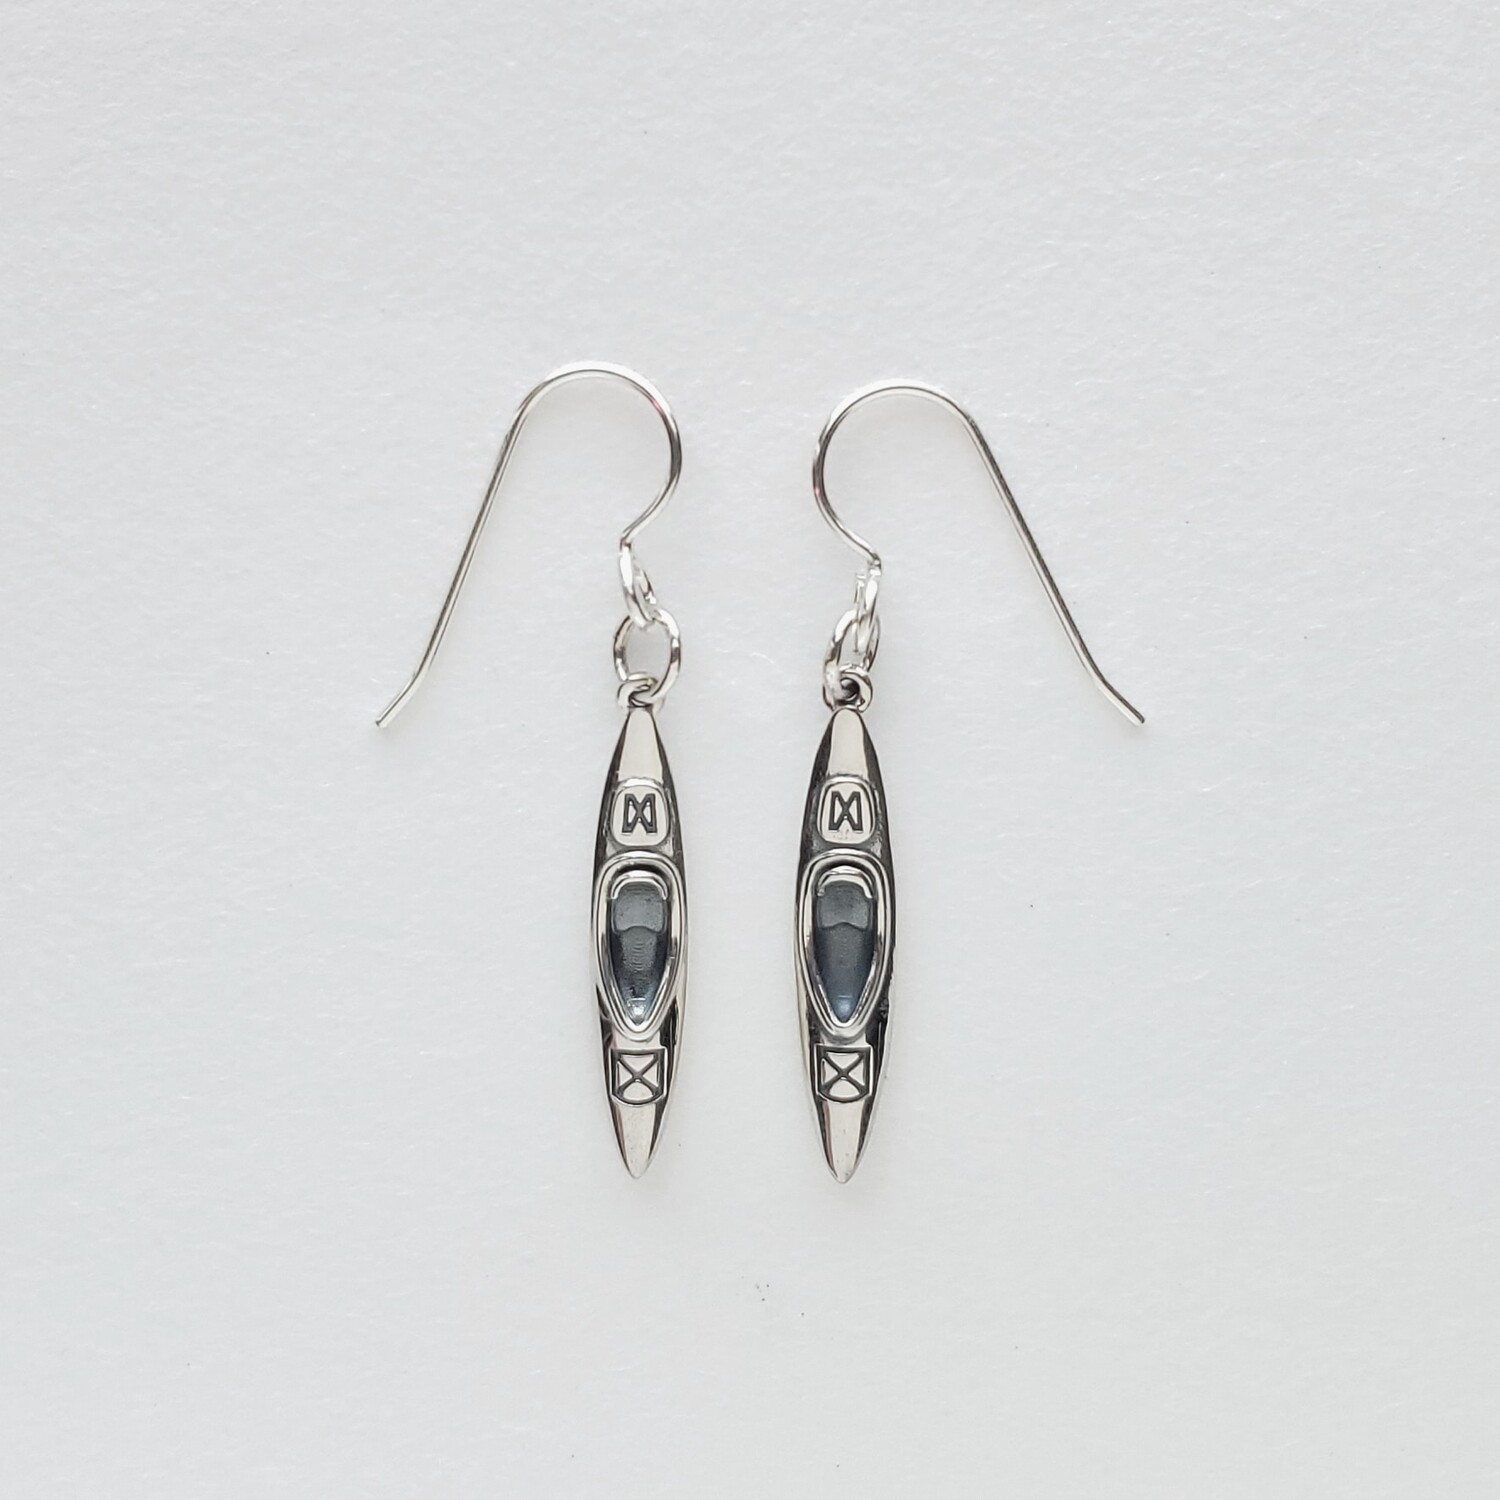 Kayak Earrings in Sterling Silver